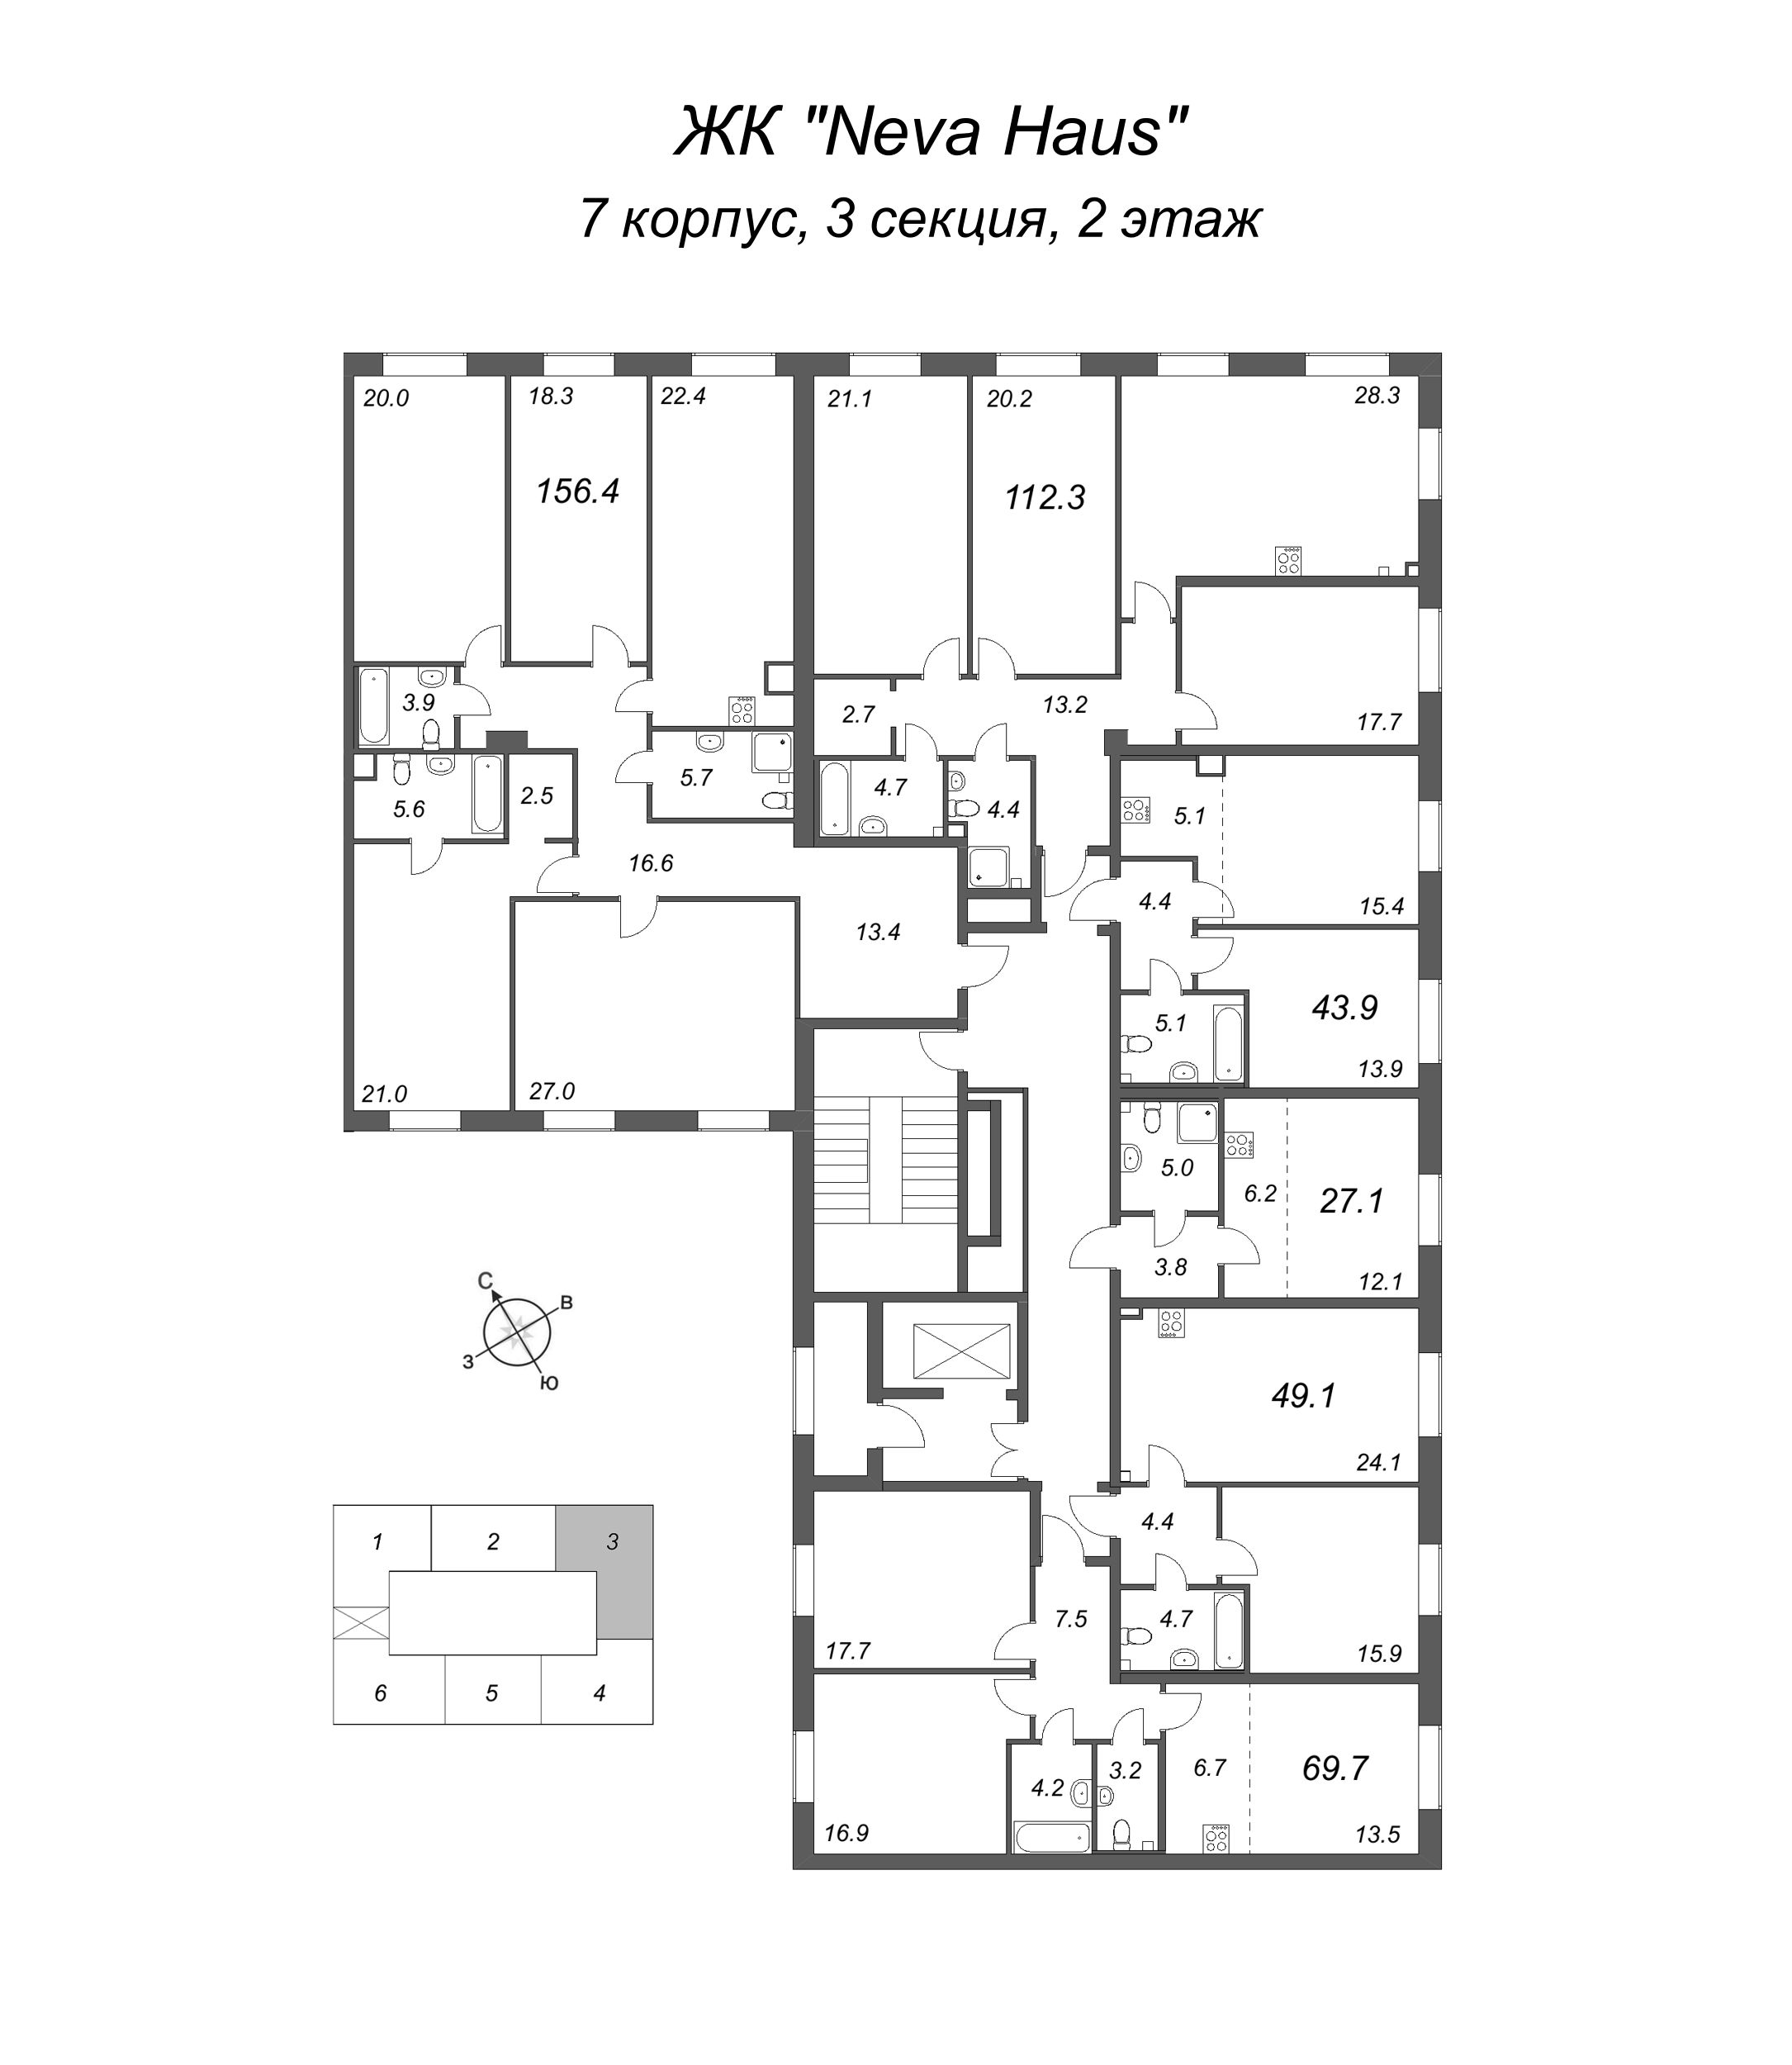 4-комнатная (Евро) квартира, 113.2 м² в ЖК "Neva Haus" - планировка этажа